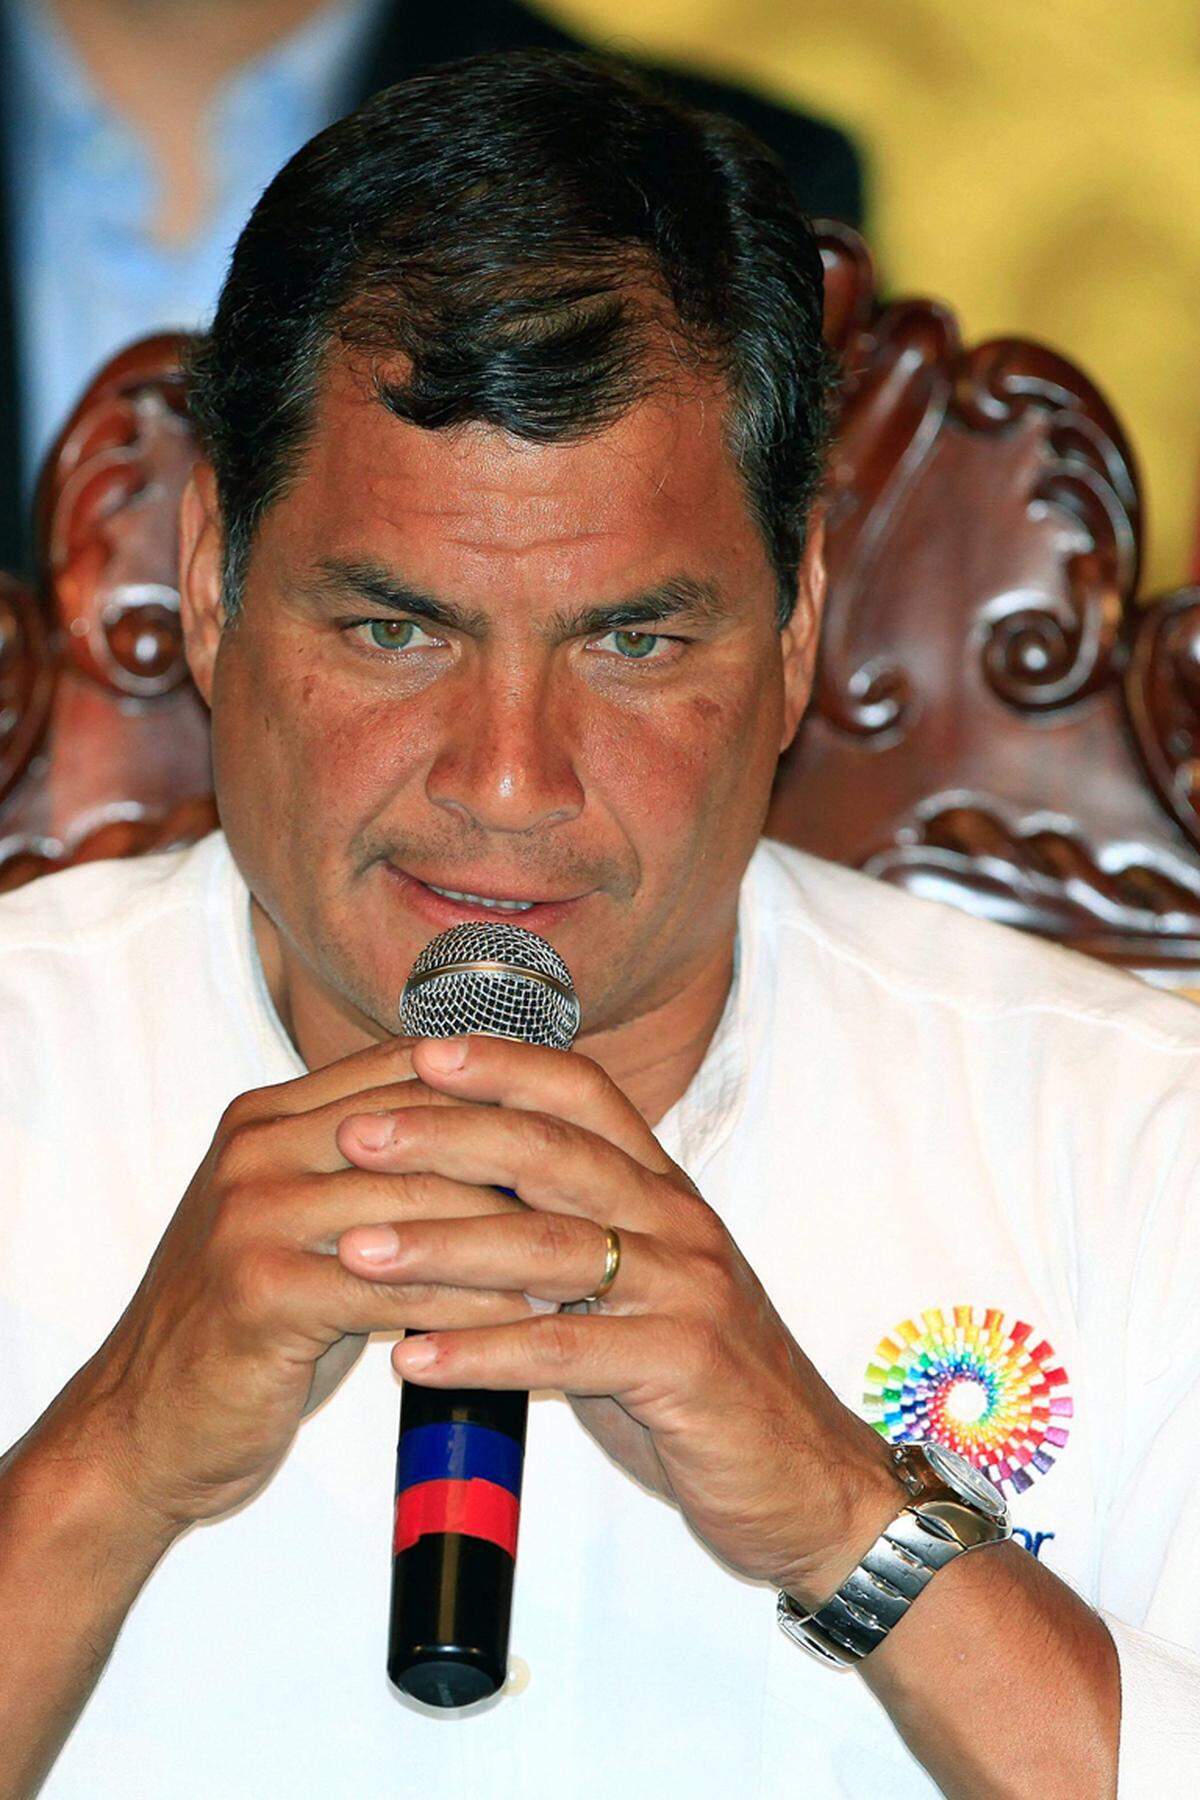 Nach dem Tod des venezolanischen Präsidenten Hugo Chavez ist die Anteilnahme vor allem in Lateinamerika groß. "Der Tod Hugos ist ein Verlust für das gesamte große Vaterland. Ein Revolutionär ist von uns gegangen", sagte der Präsident Ecuadors, Rafael Correa. Chavez sei nicht tot, "in den Augen jenes venezolanischen Kindes, das nun über eine Schulausbildung verfügt, in den Augen jenes Venezuelas, das nun über Rechte verfügt, ist er lebendiger als je zuvor." Der ecuadorianische Präsident schloss seine Rede mit den Worten "Hasta la victoria siempre! Que viva Hugo Chavez Frias!" (Unaufhörlich bis zum Sieg! Es lebe Hugo Chavez Frias!).